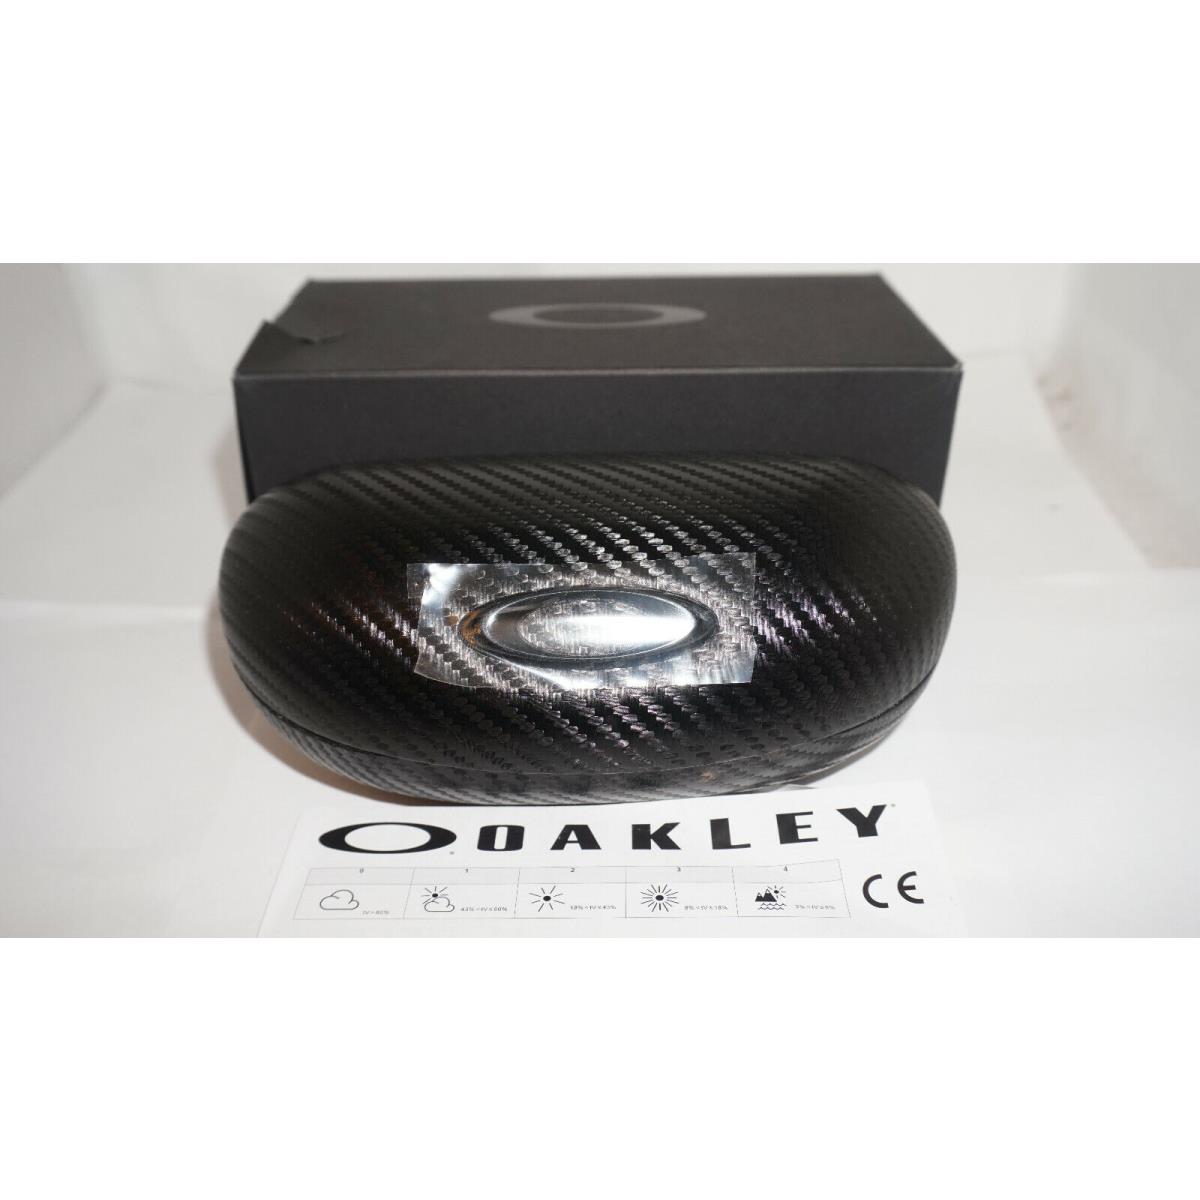 Oakley sunglasses  - Black Frame, Red Lens 2